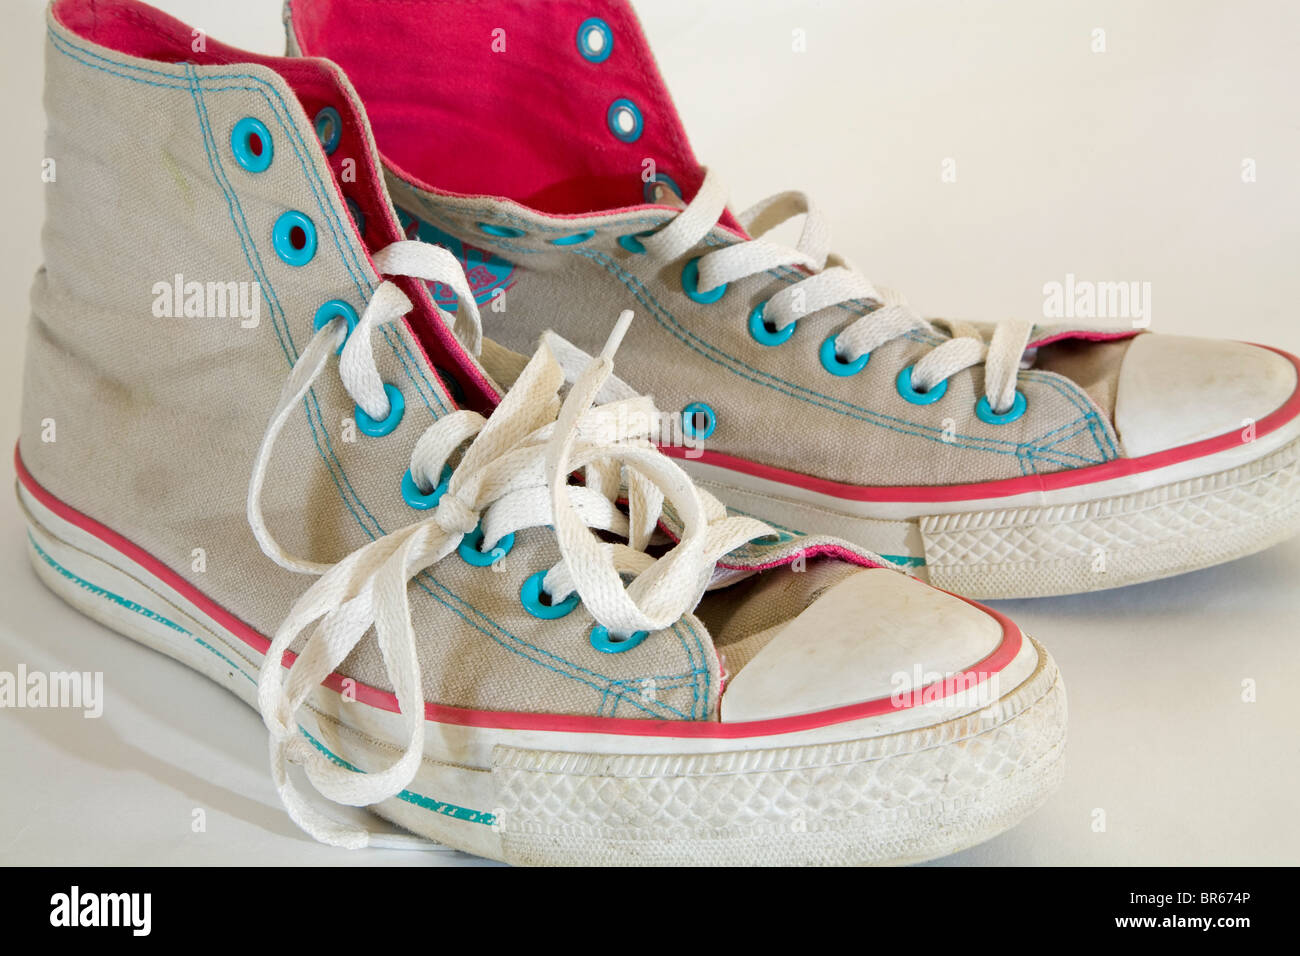 Converse scarpe da tennis immagini e fotografie stock ad alta risoluzione -  Alamy